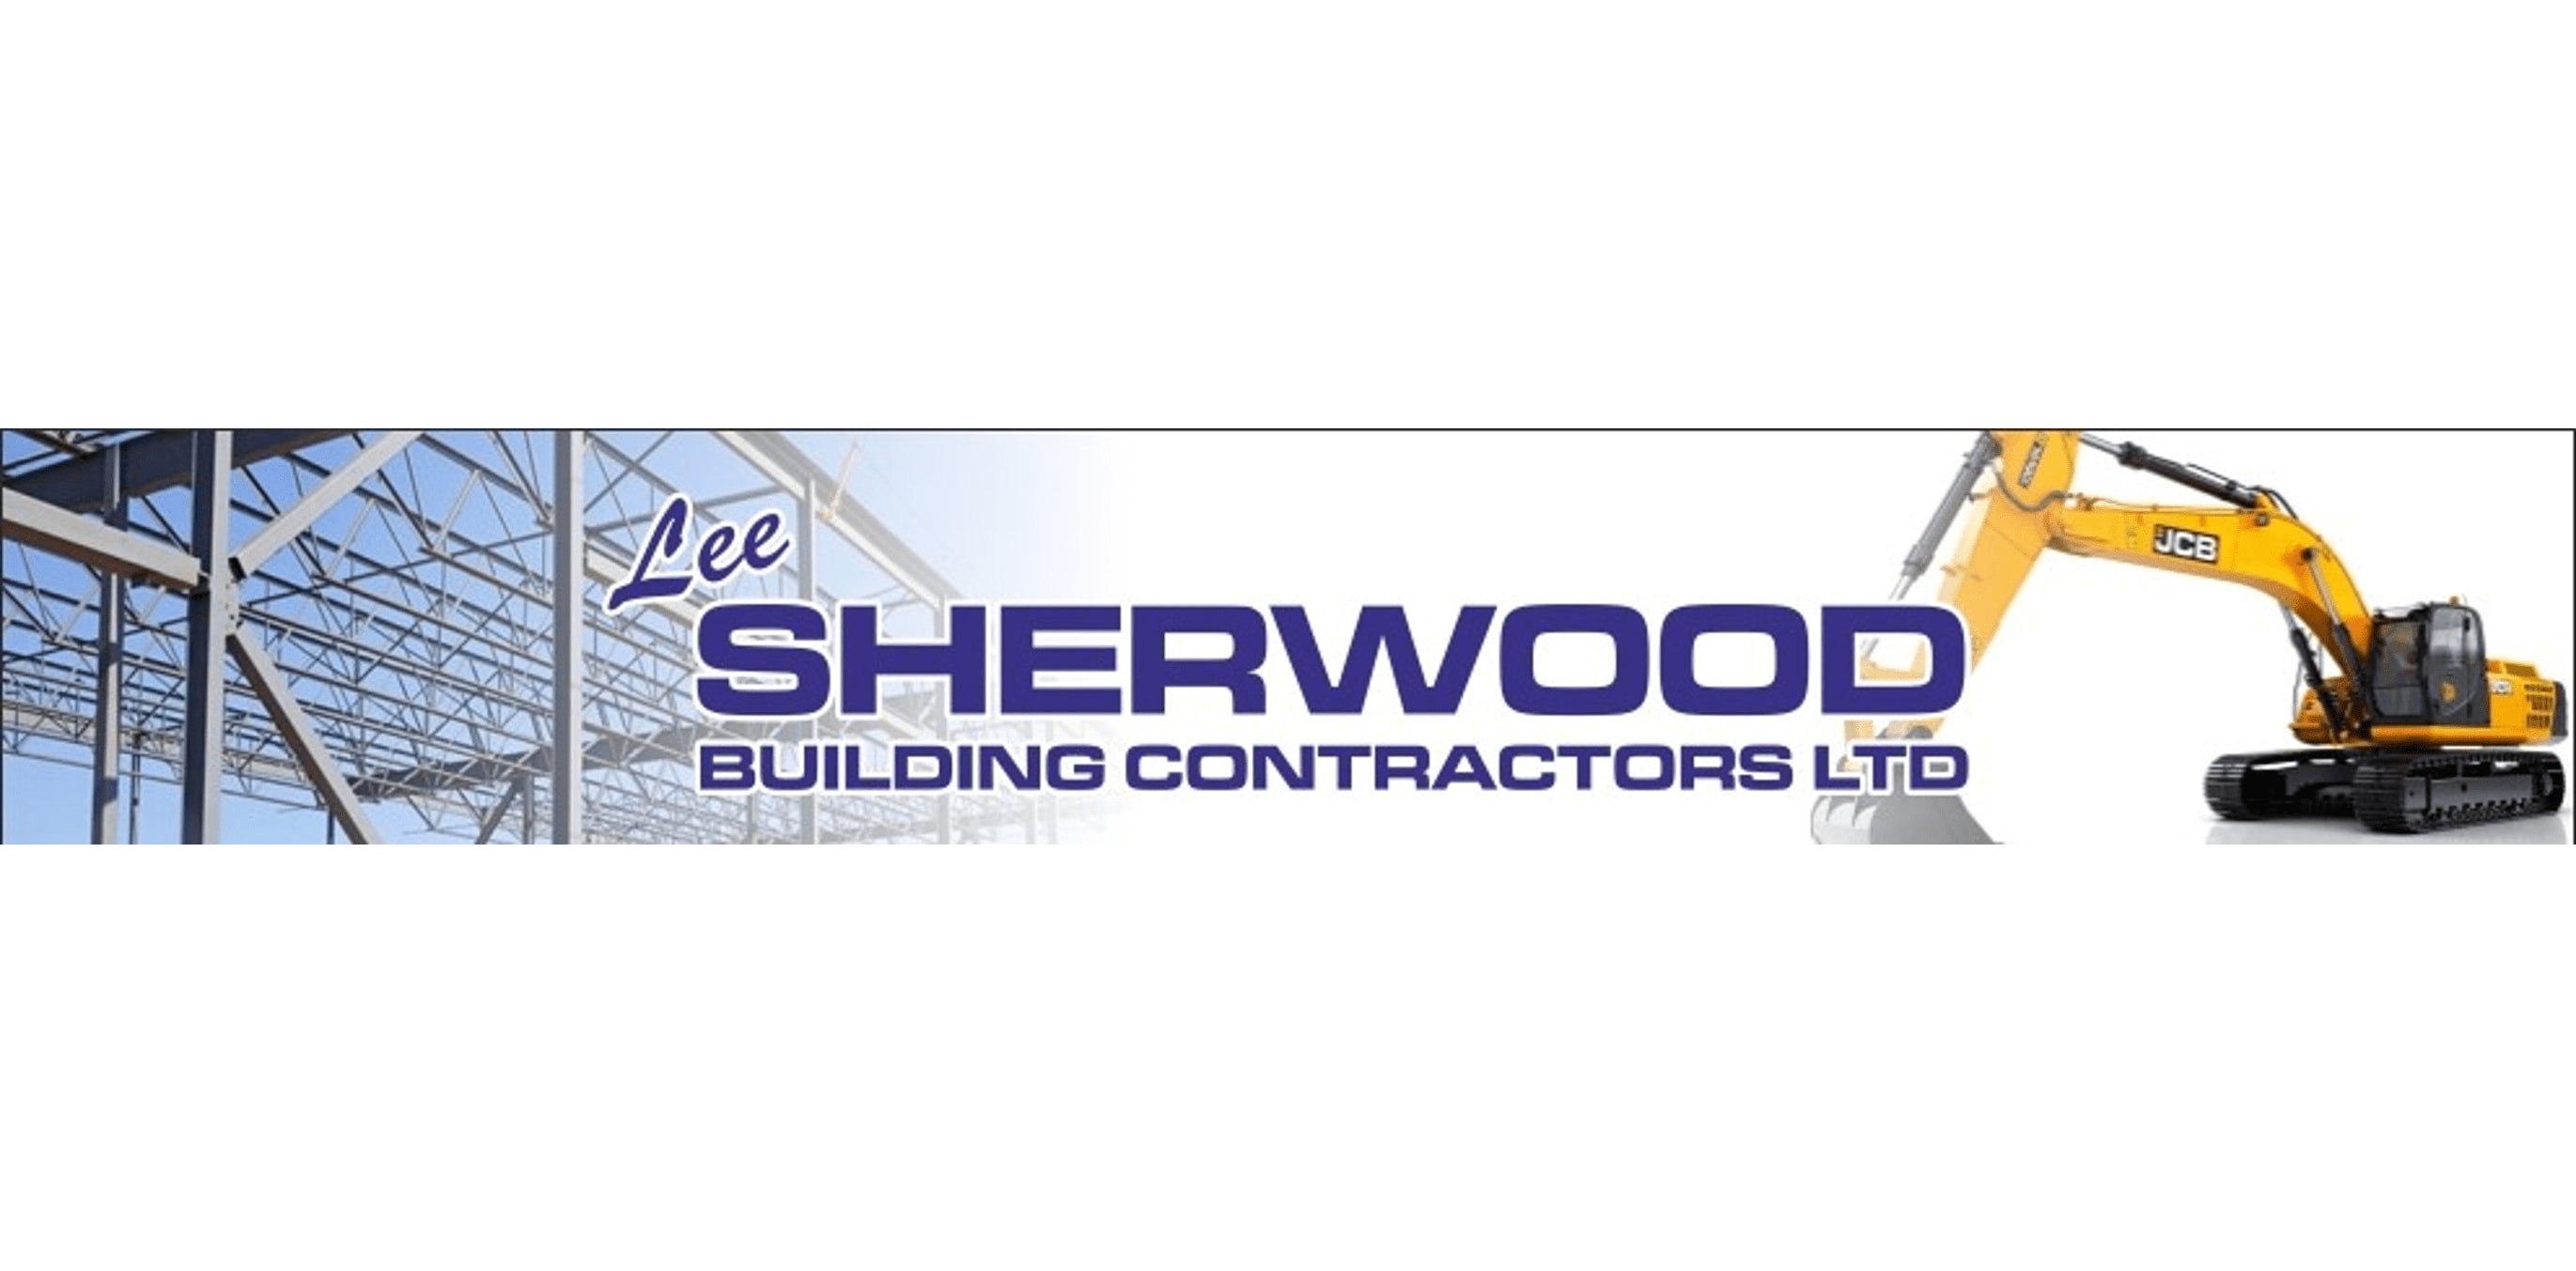 Lee Sherwood Building Contractors